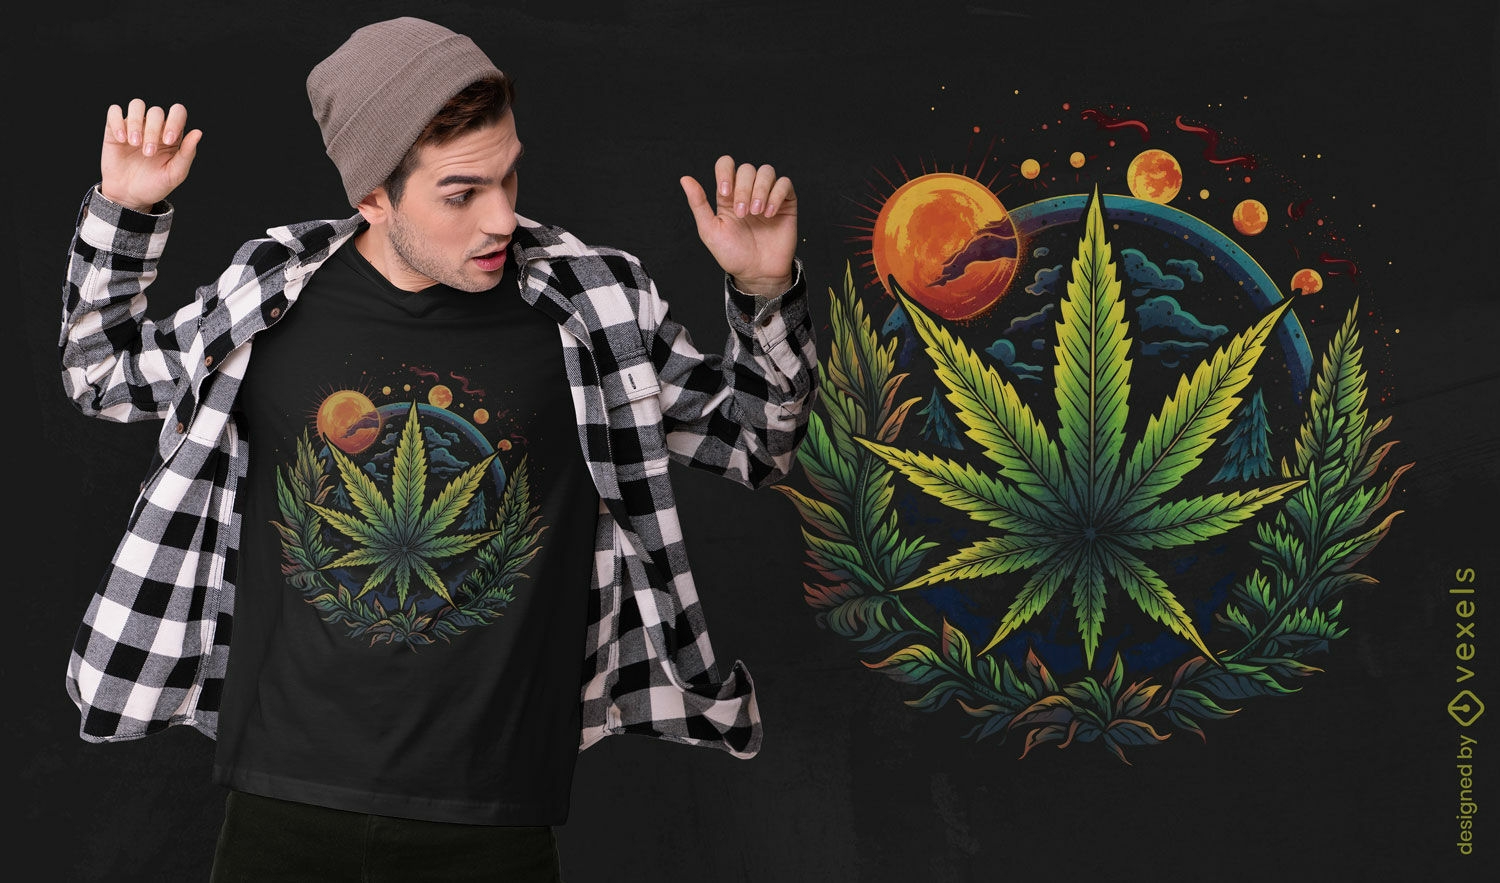 Cosmic cannabis leaf t-shirt design